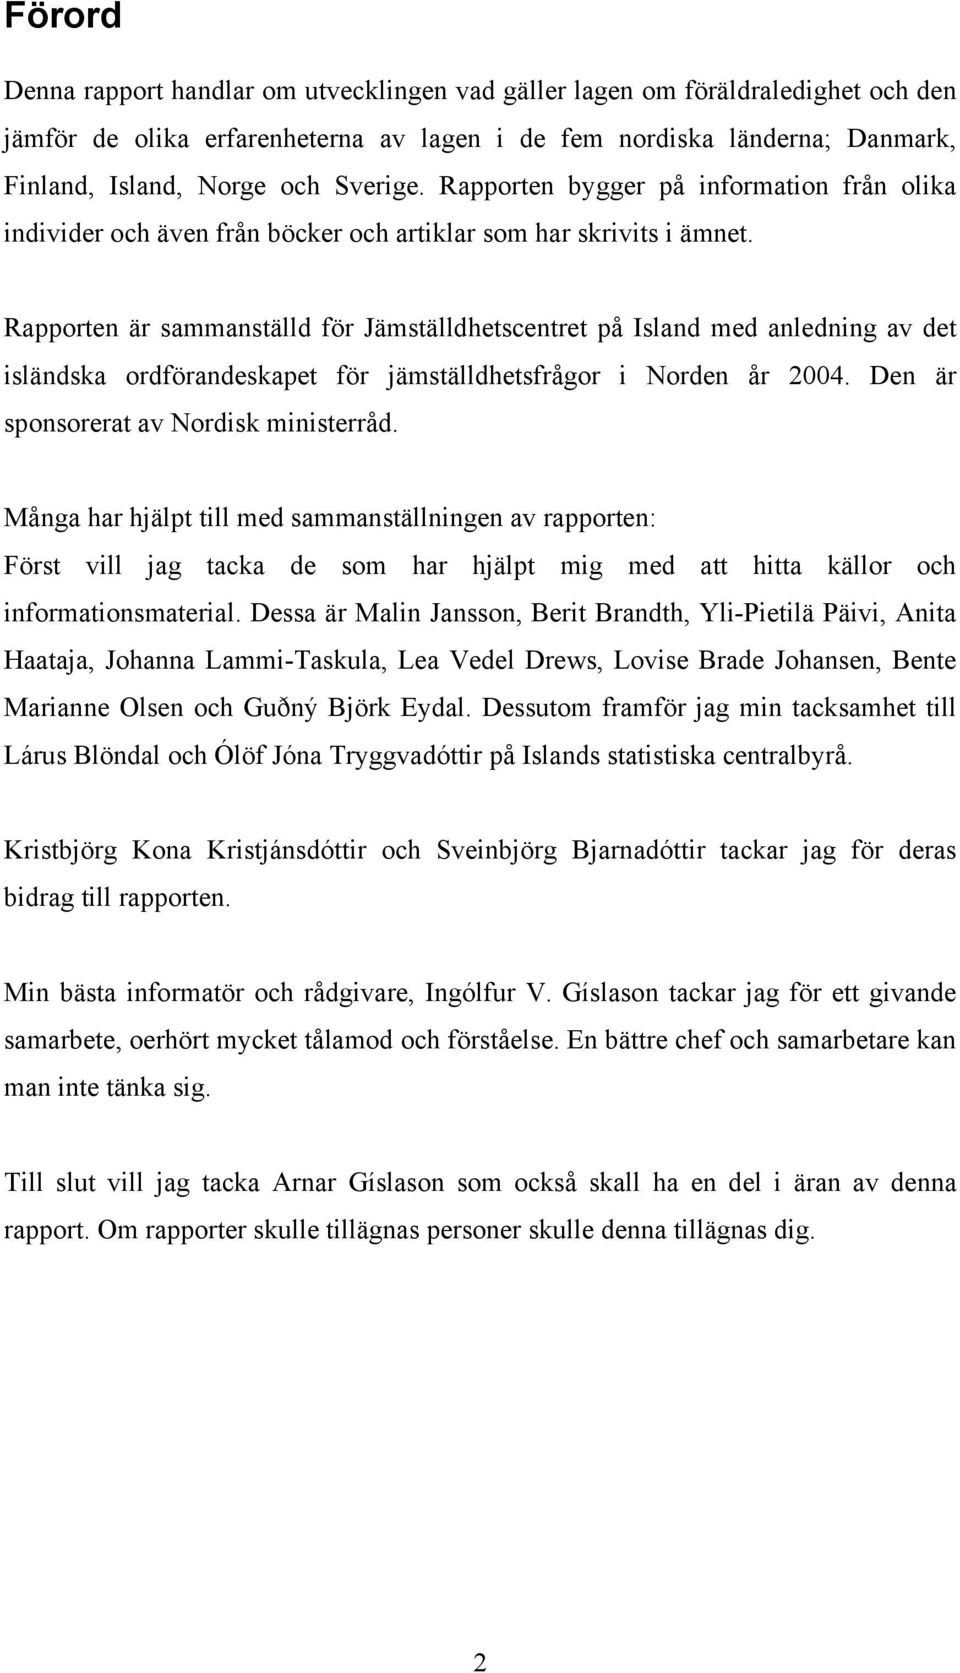 Rapporten är sammanställd för Jämställdhetscentret på Island med anledning av det isländska ordförandeskapet för jämställdhetsfrågor i Norden år 2004. Den är sponsorerat av Nordisk ministerråd.